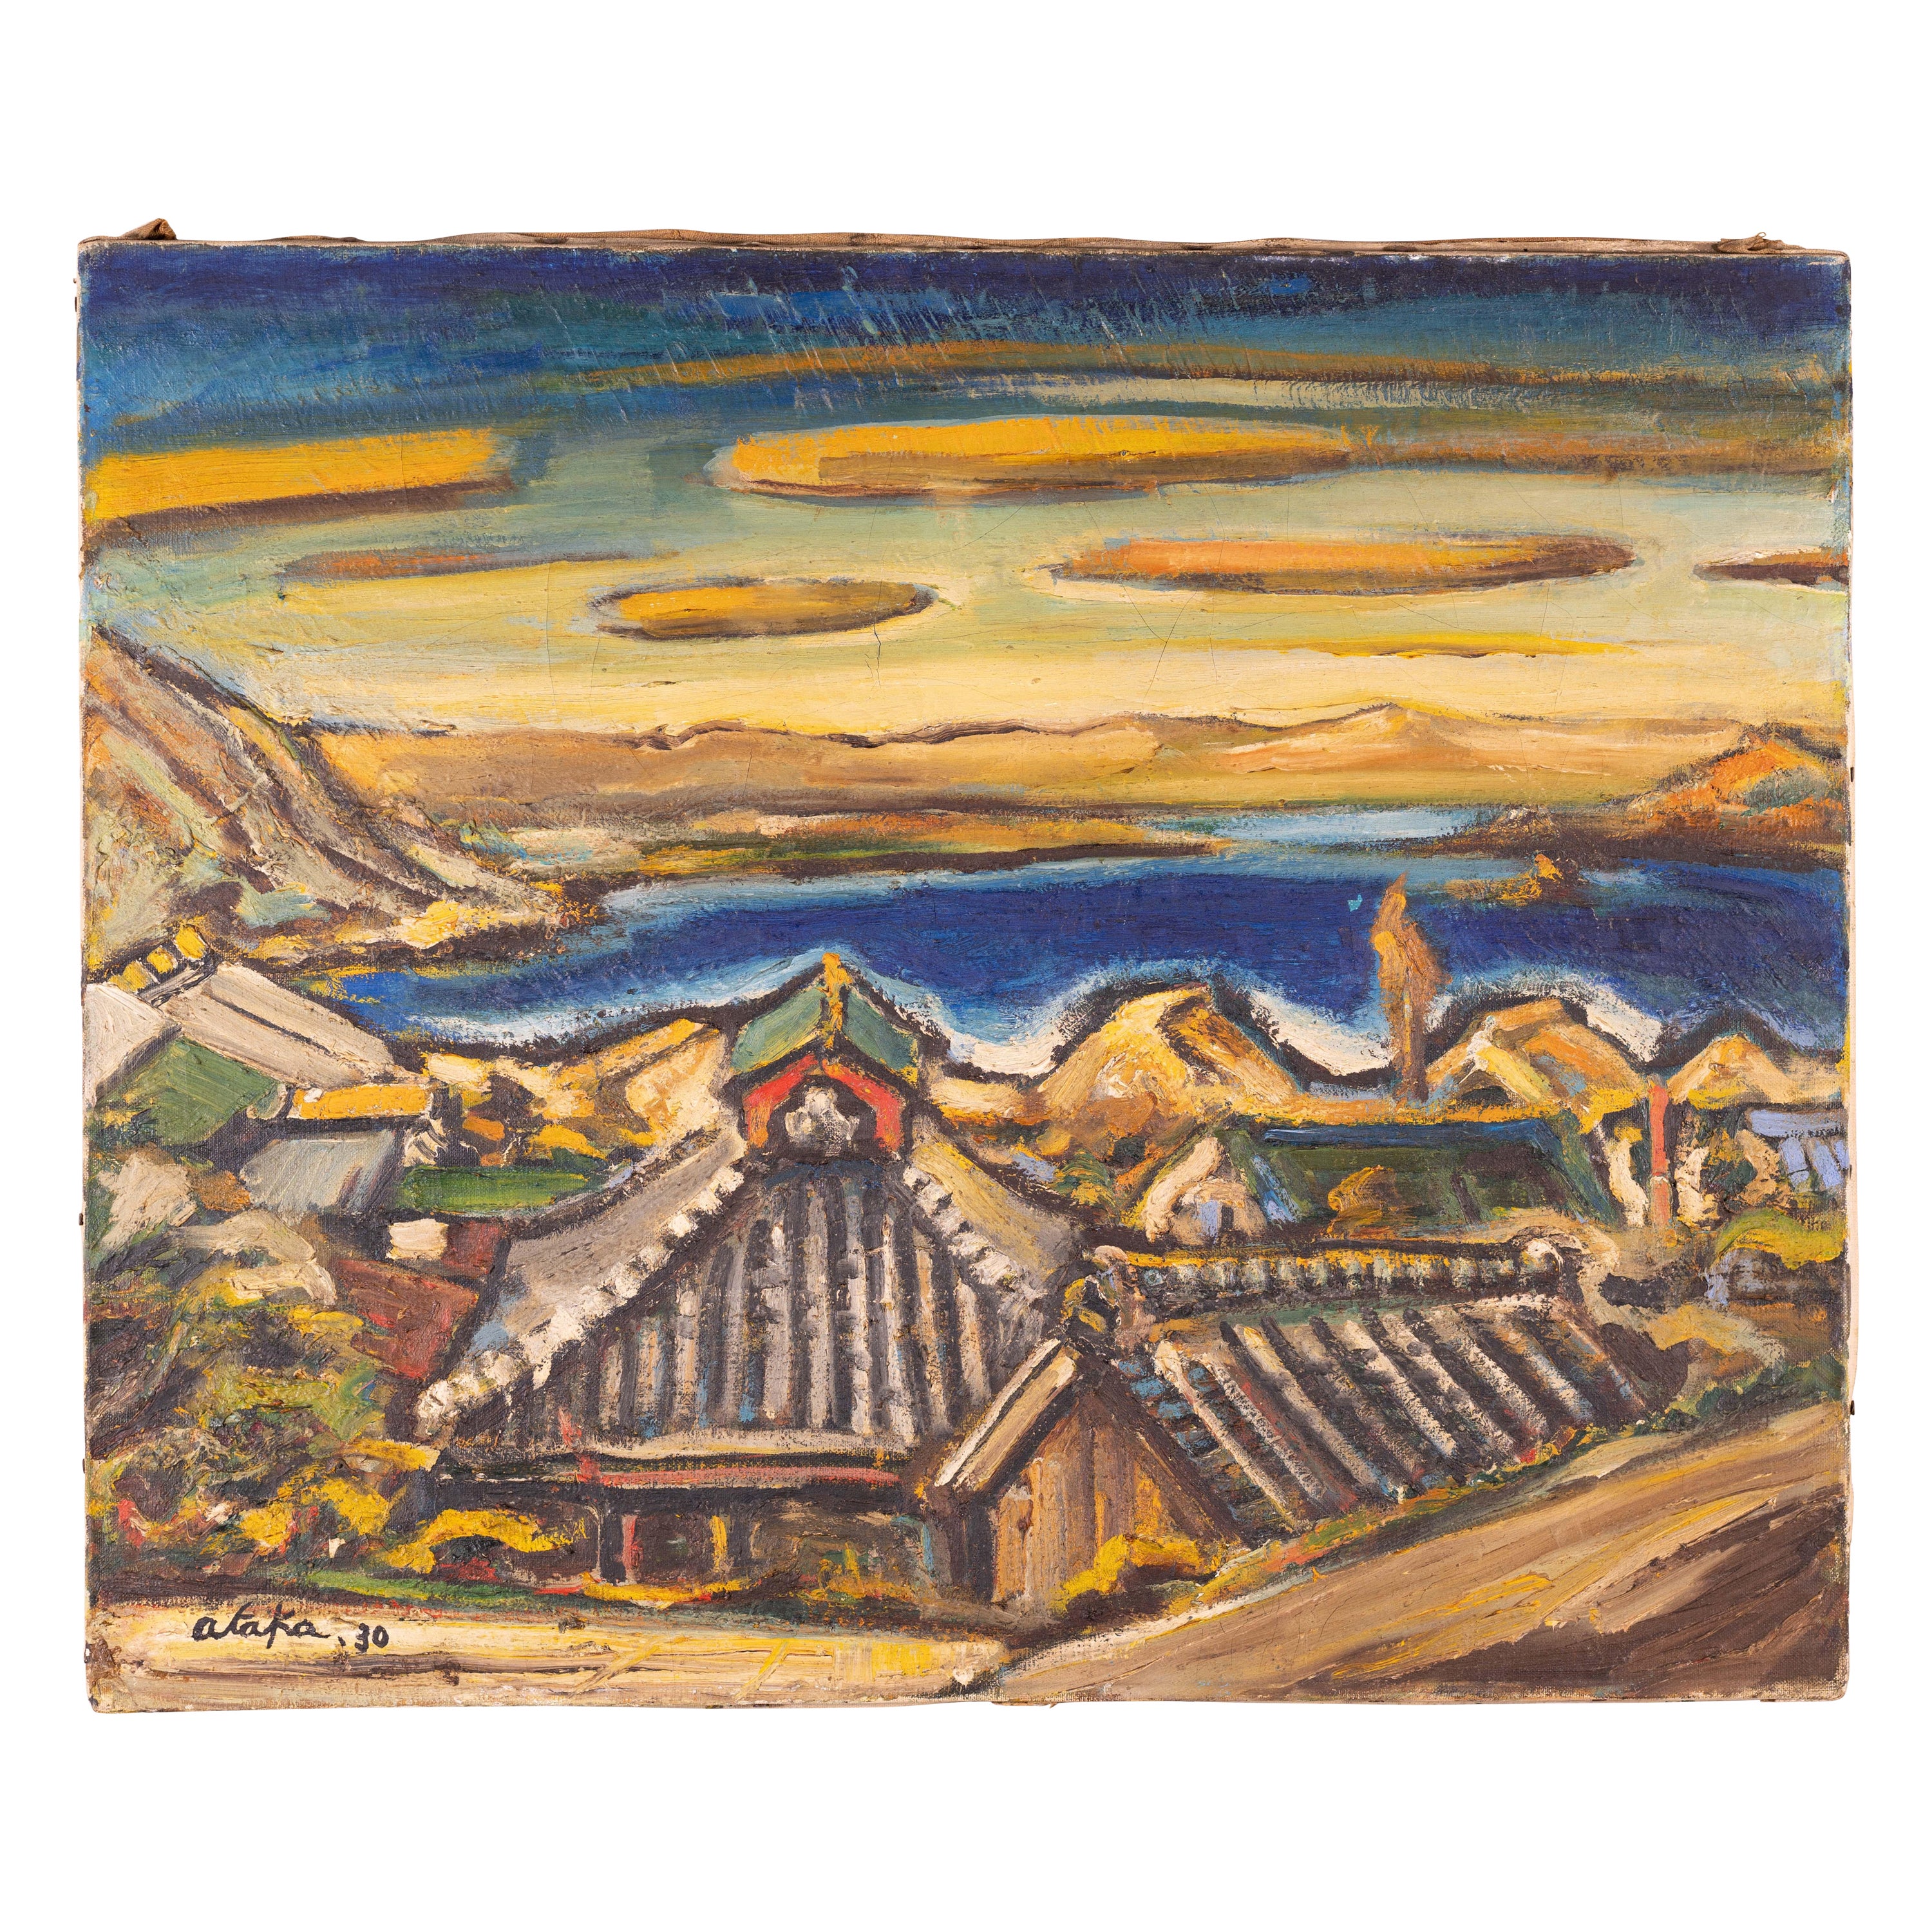 Peinture moderniste japonaise d'un village de bord de mer par Torao Ataka datée de 1930